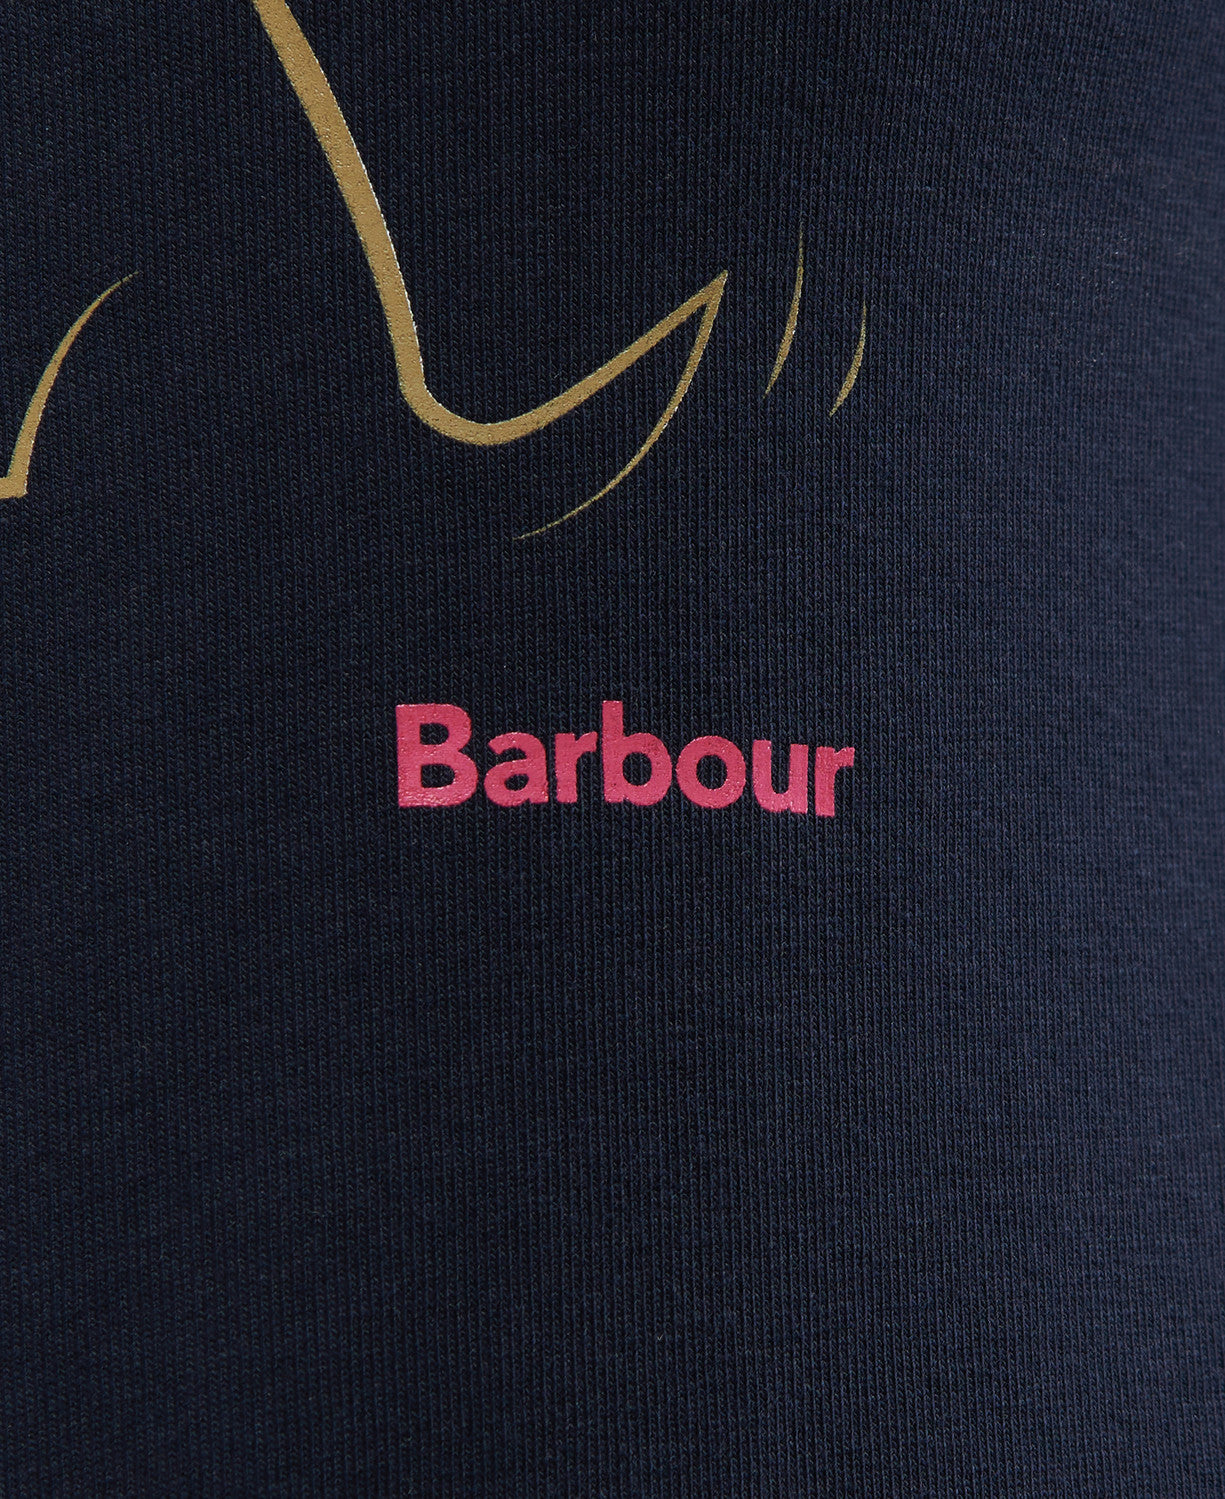 Barbour Lossie Long Sleeve Top